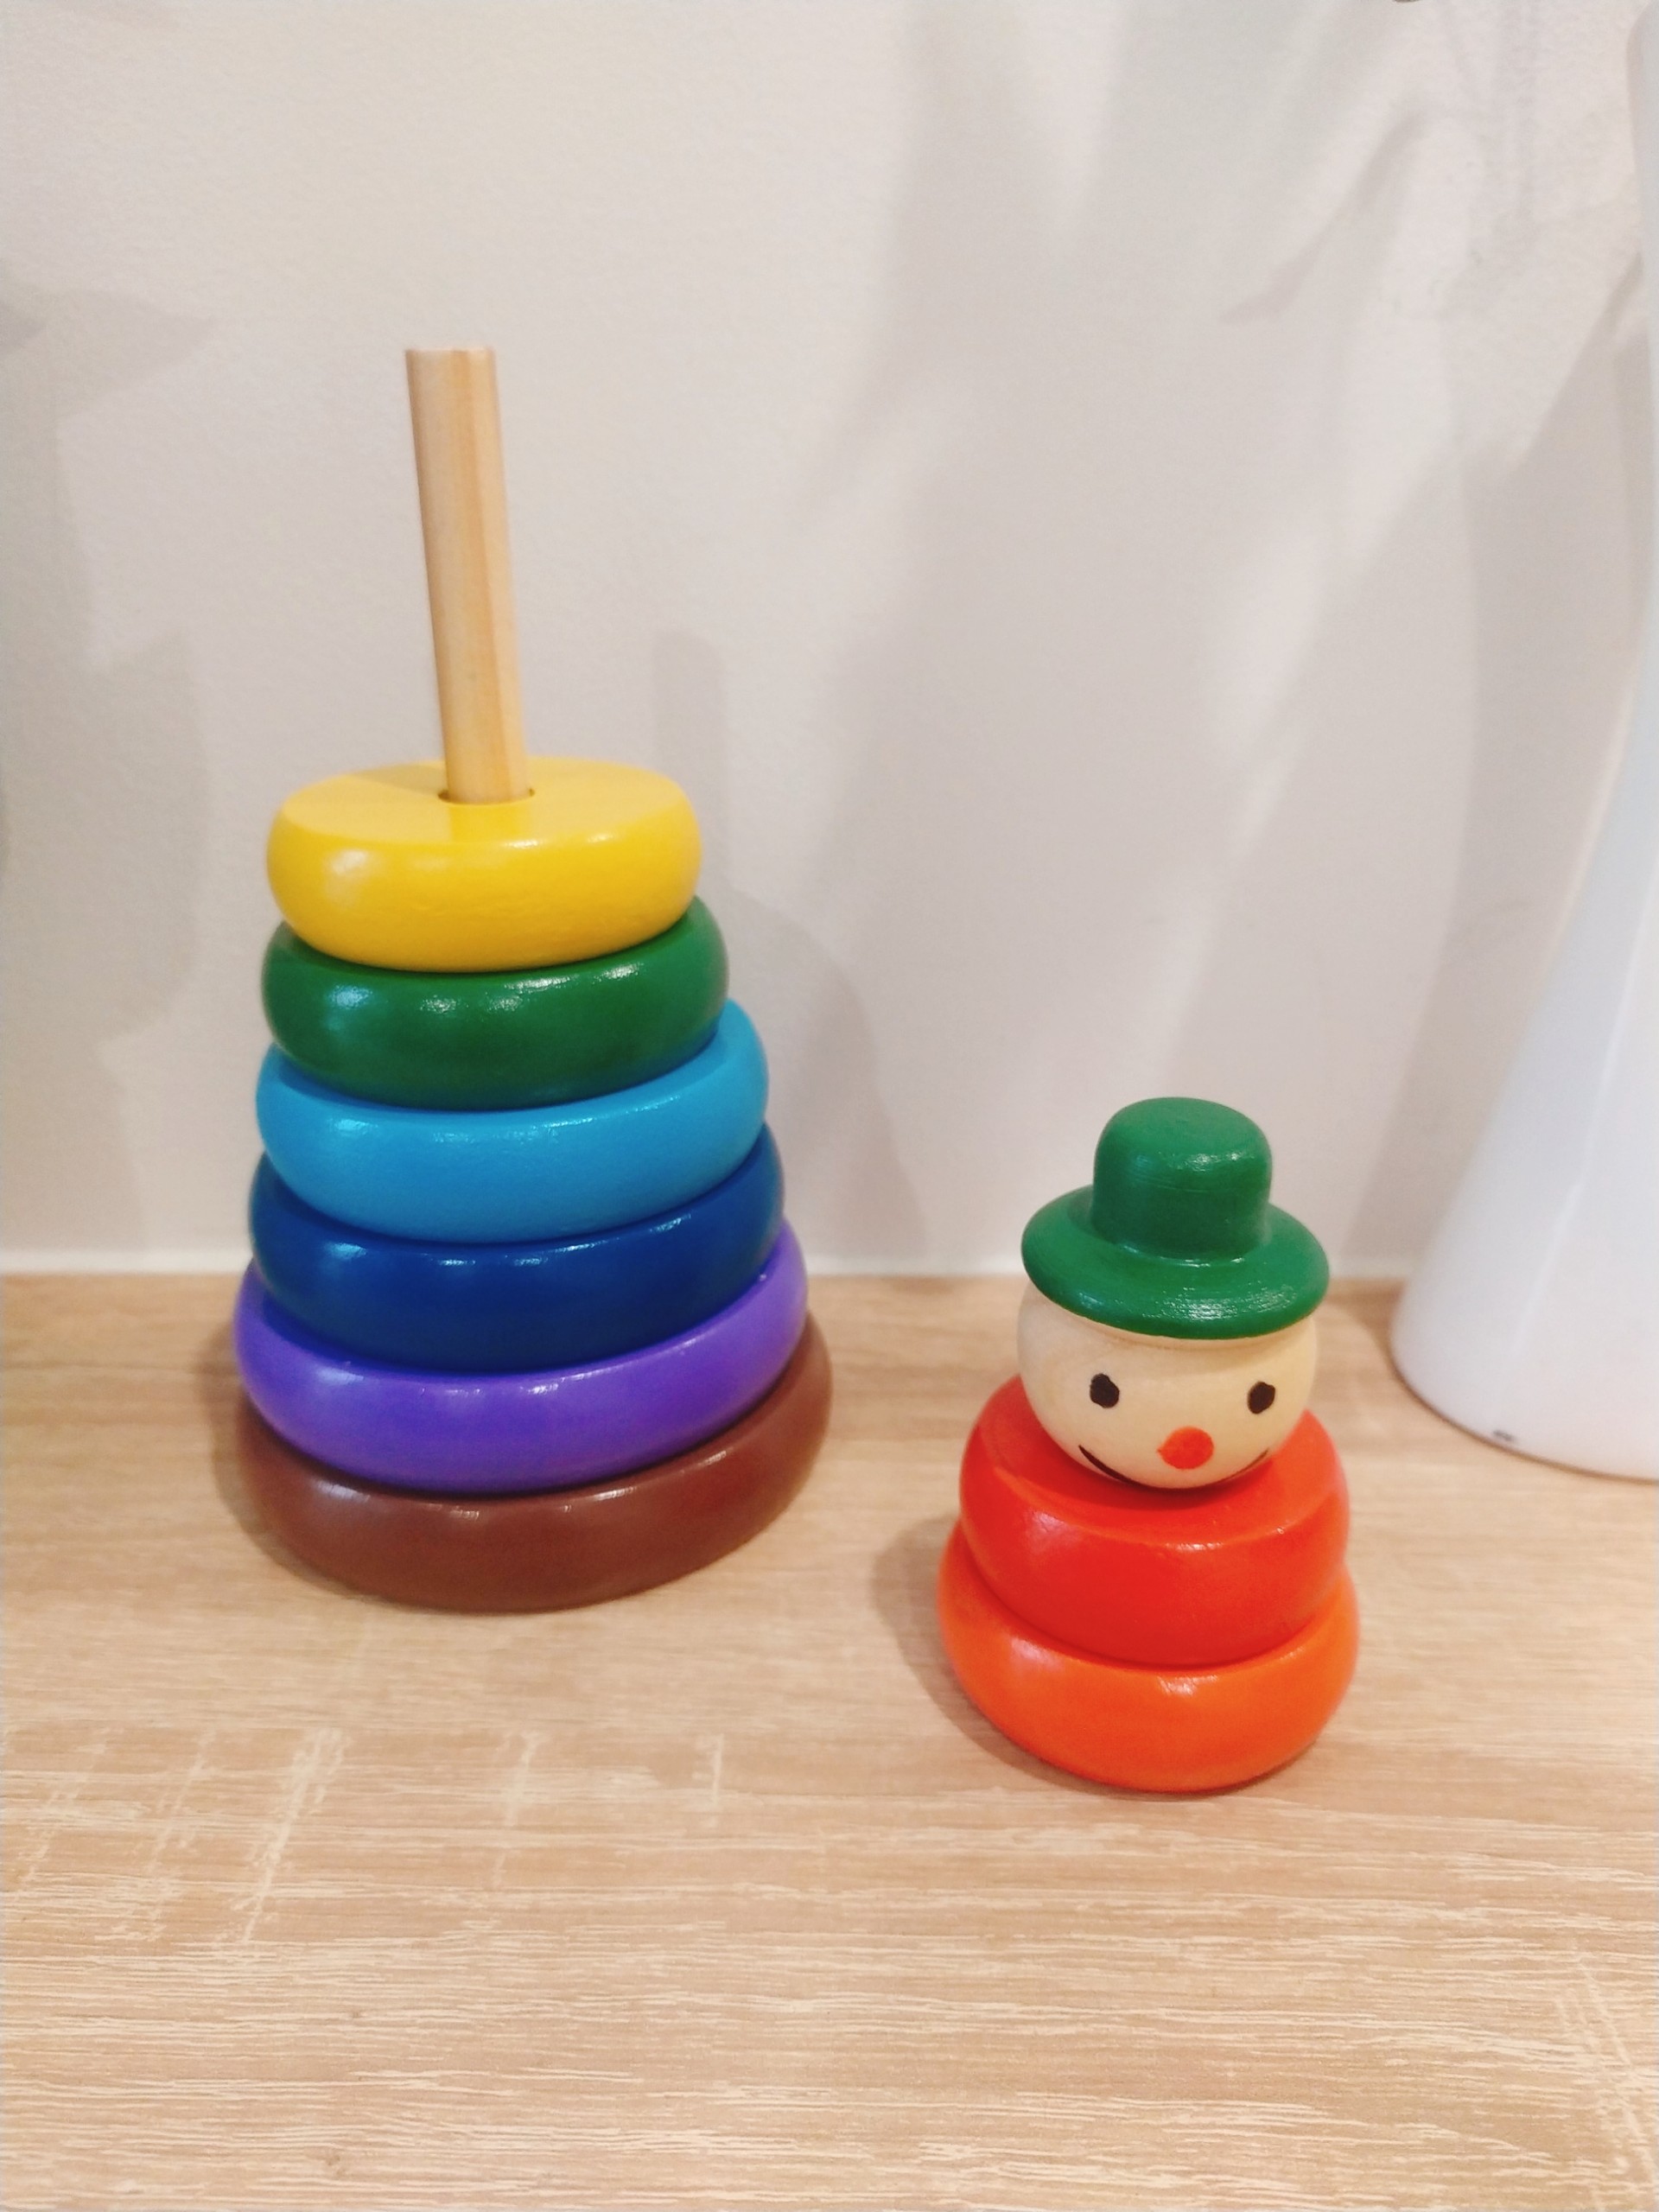 Combo 3 món đồ chơi gỗ kích thích màu sắc, tăng khả năng tư duy nhận biết con số, hình khối - Hàng chính hãng an toàn cho bé